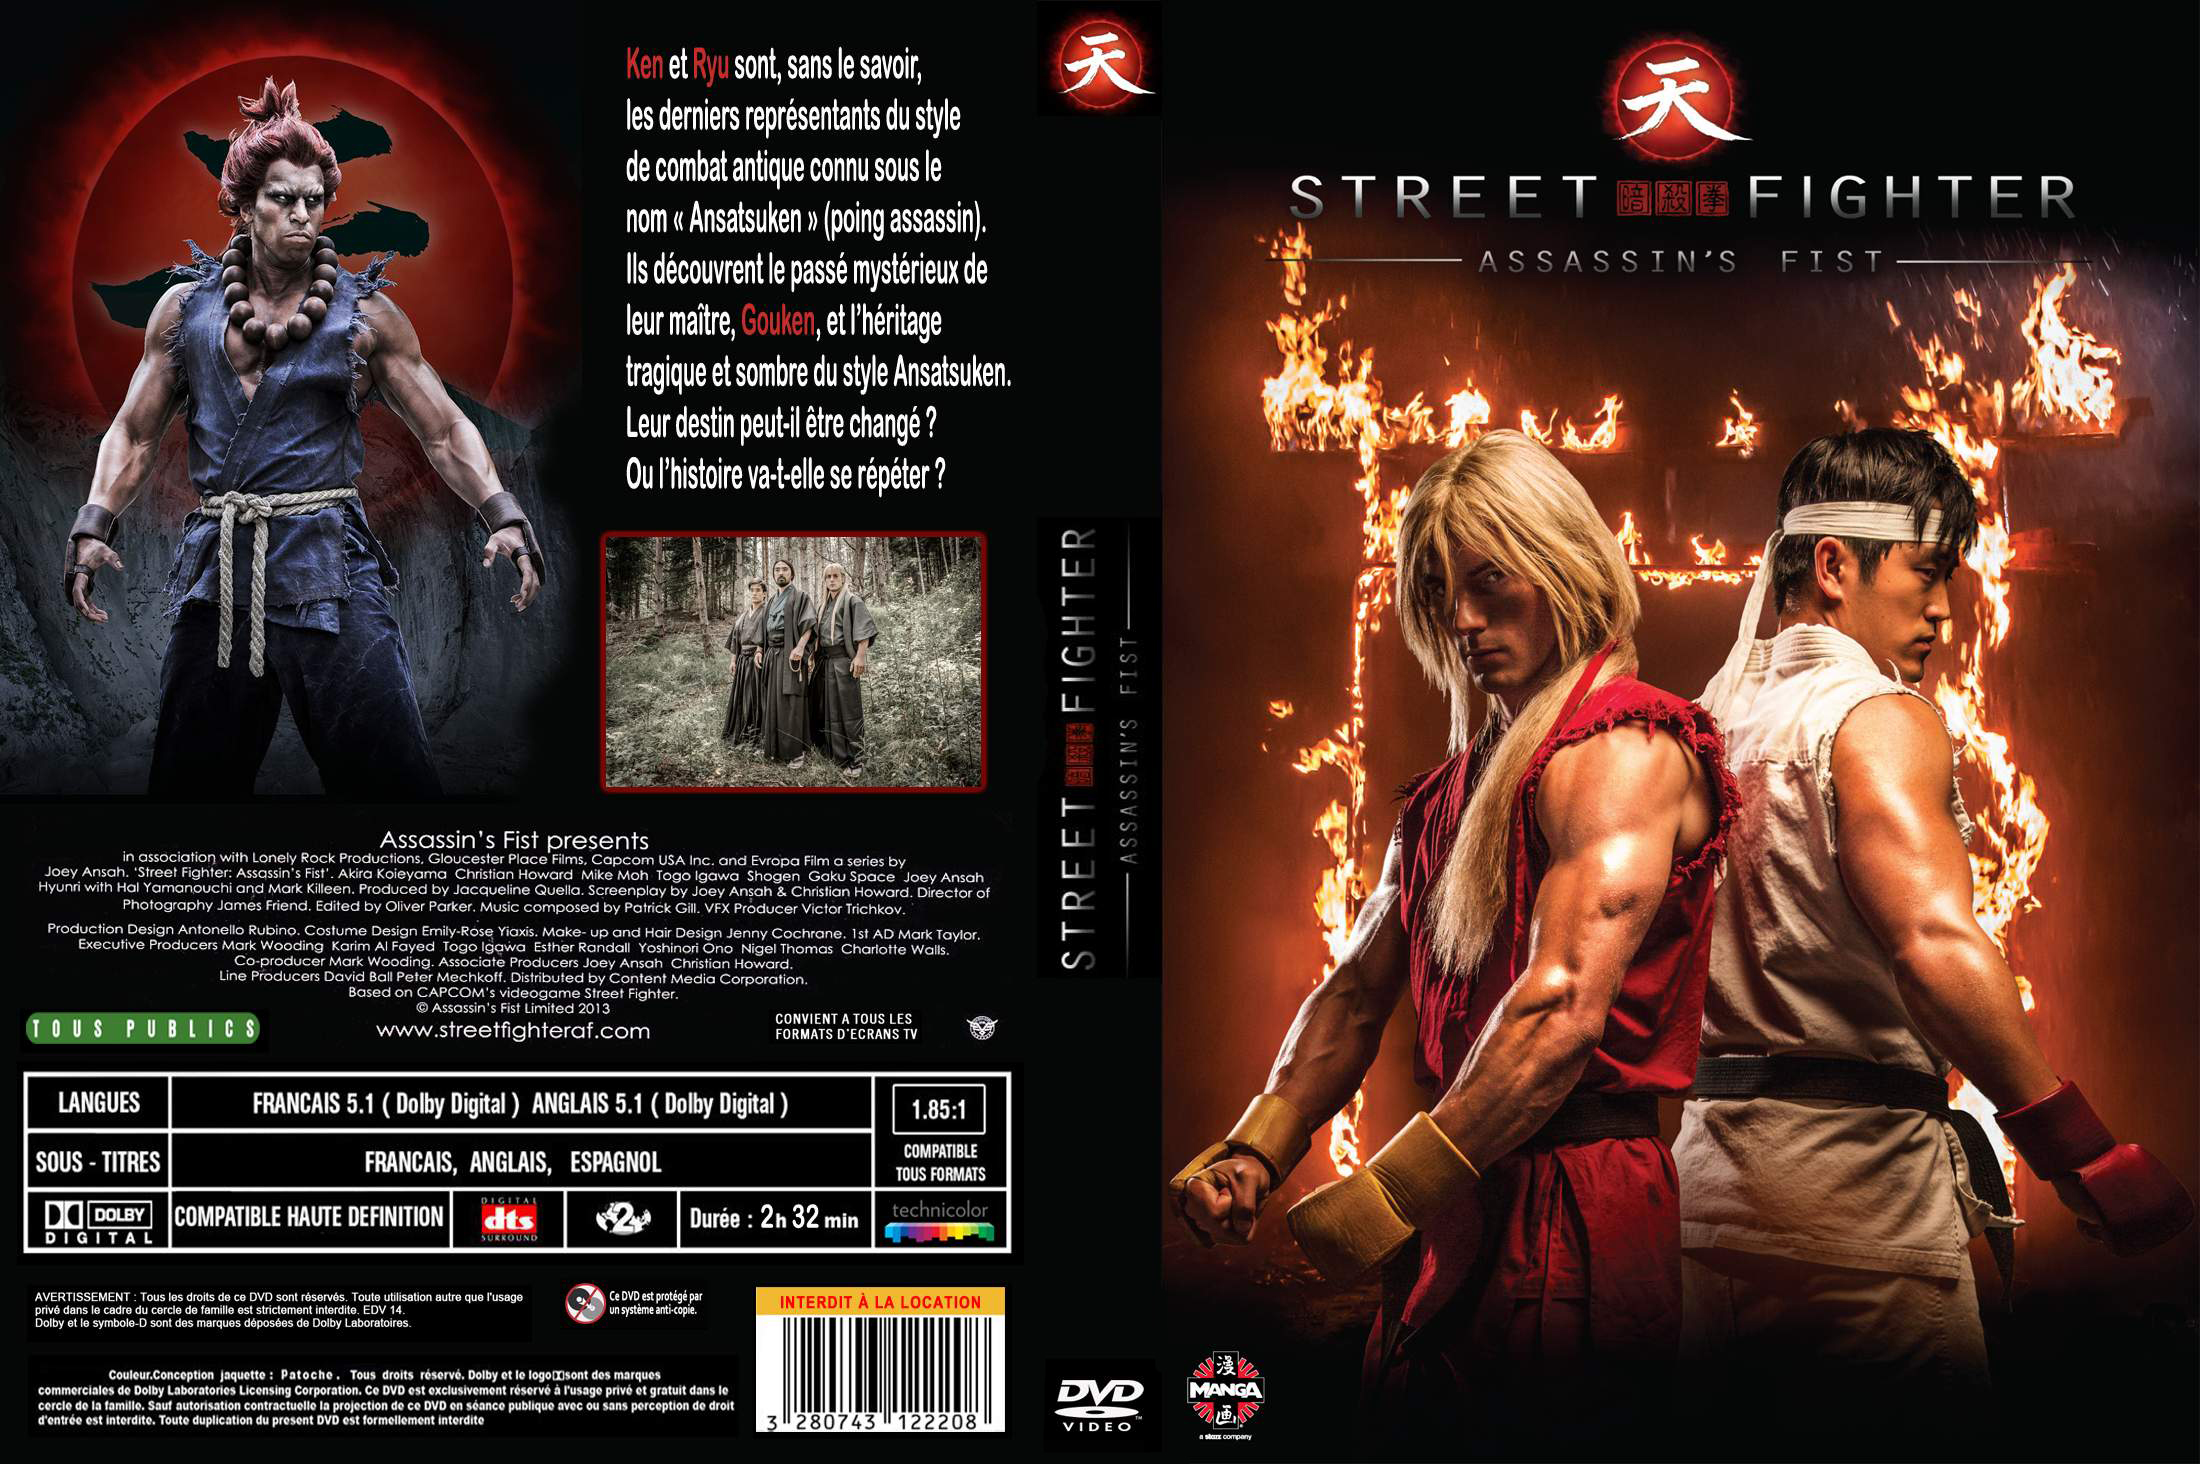 Jaquette DVD Street Fighter assassin